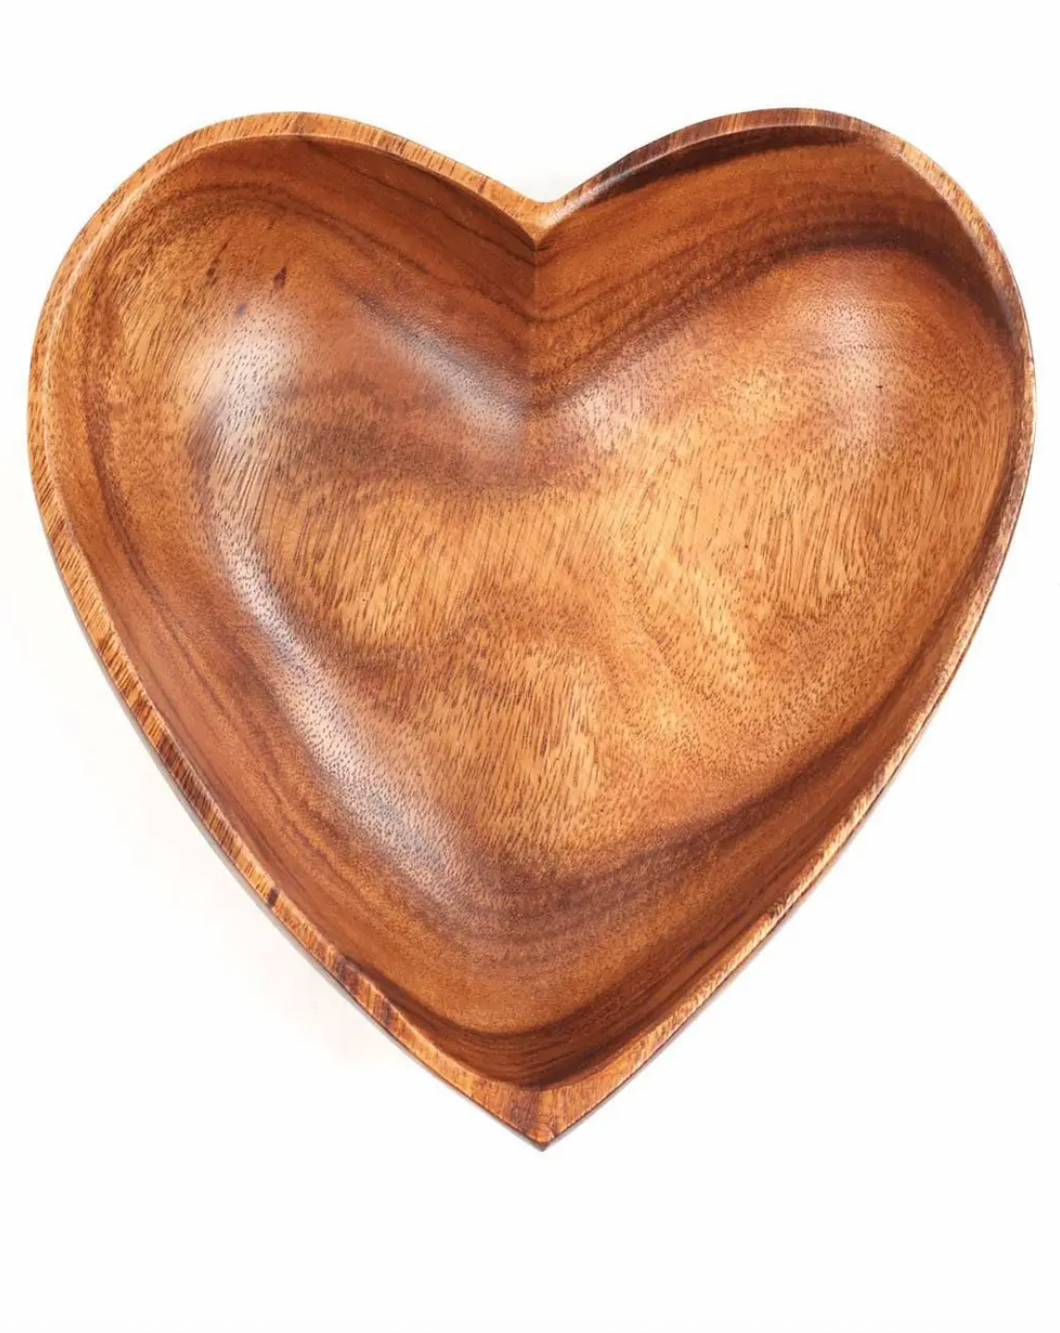 Small Acacia Wood Heart Bowl